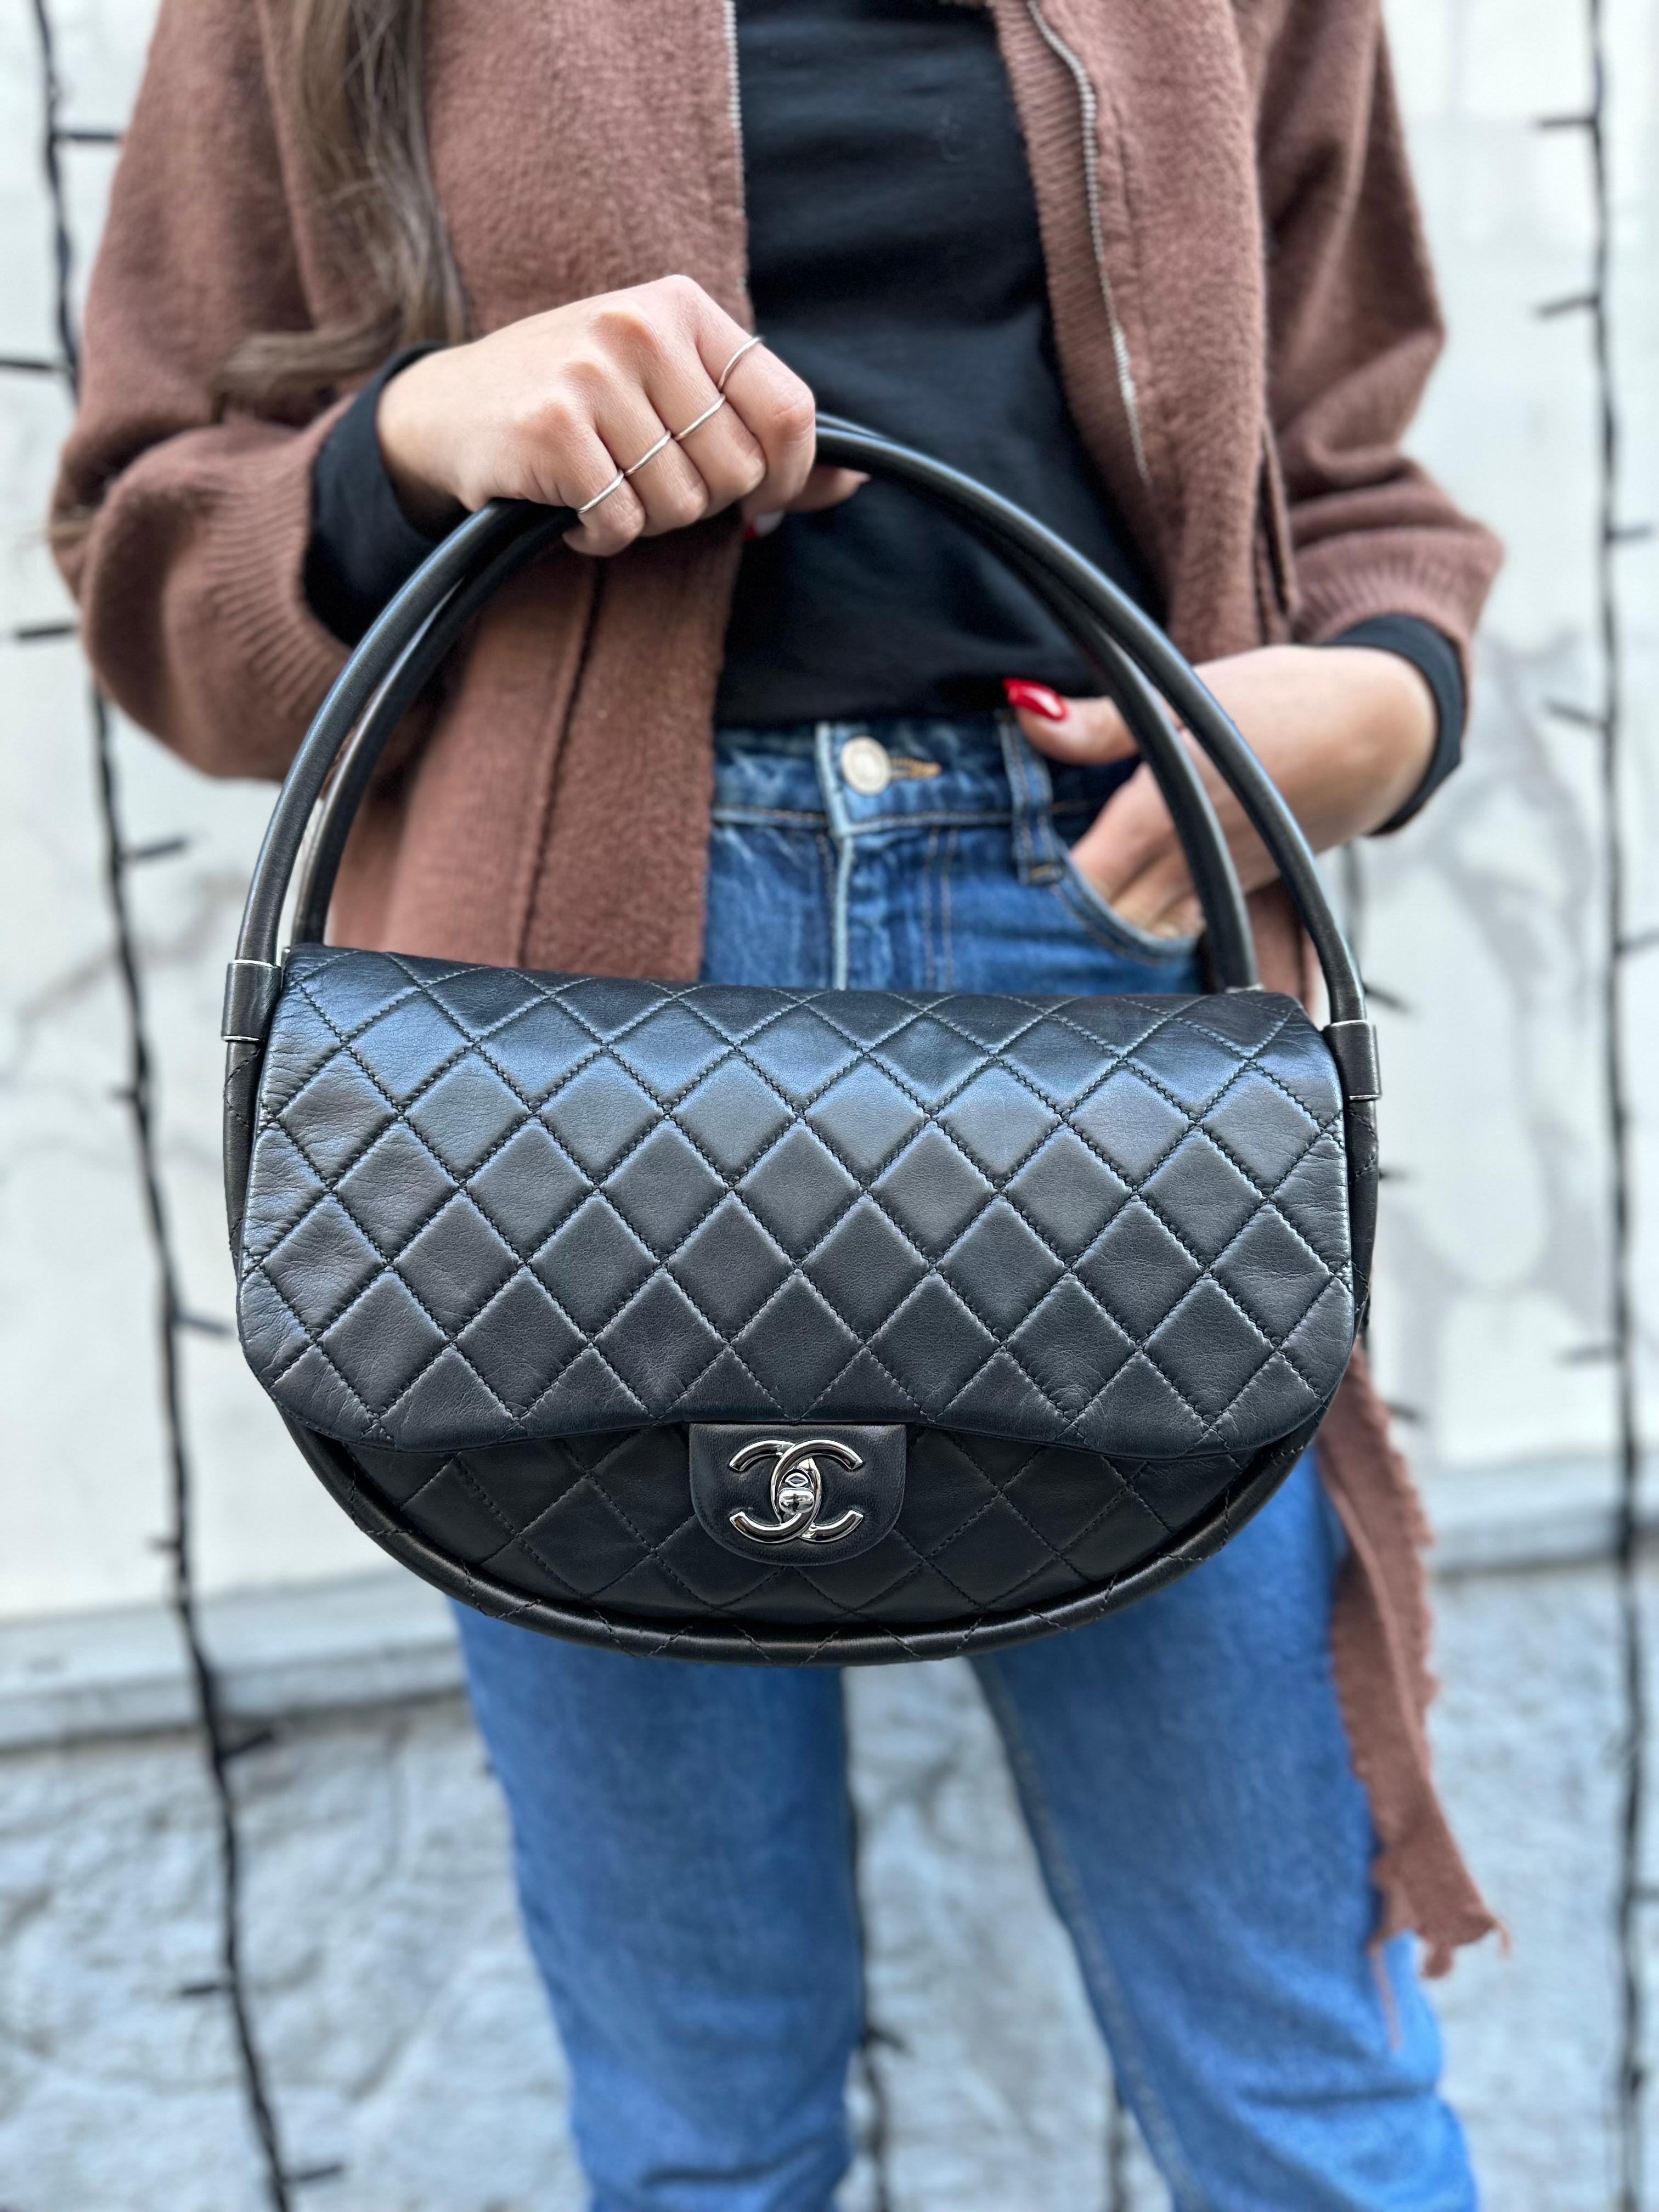 Chanel Black Leather Hula Hoop Shoulder Bag For Sale 3